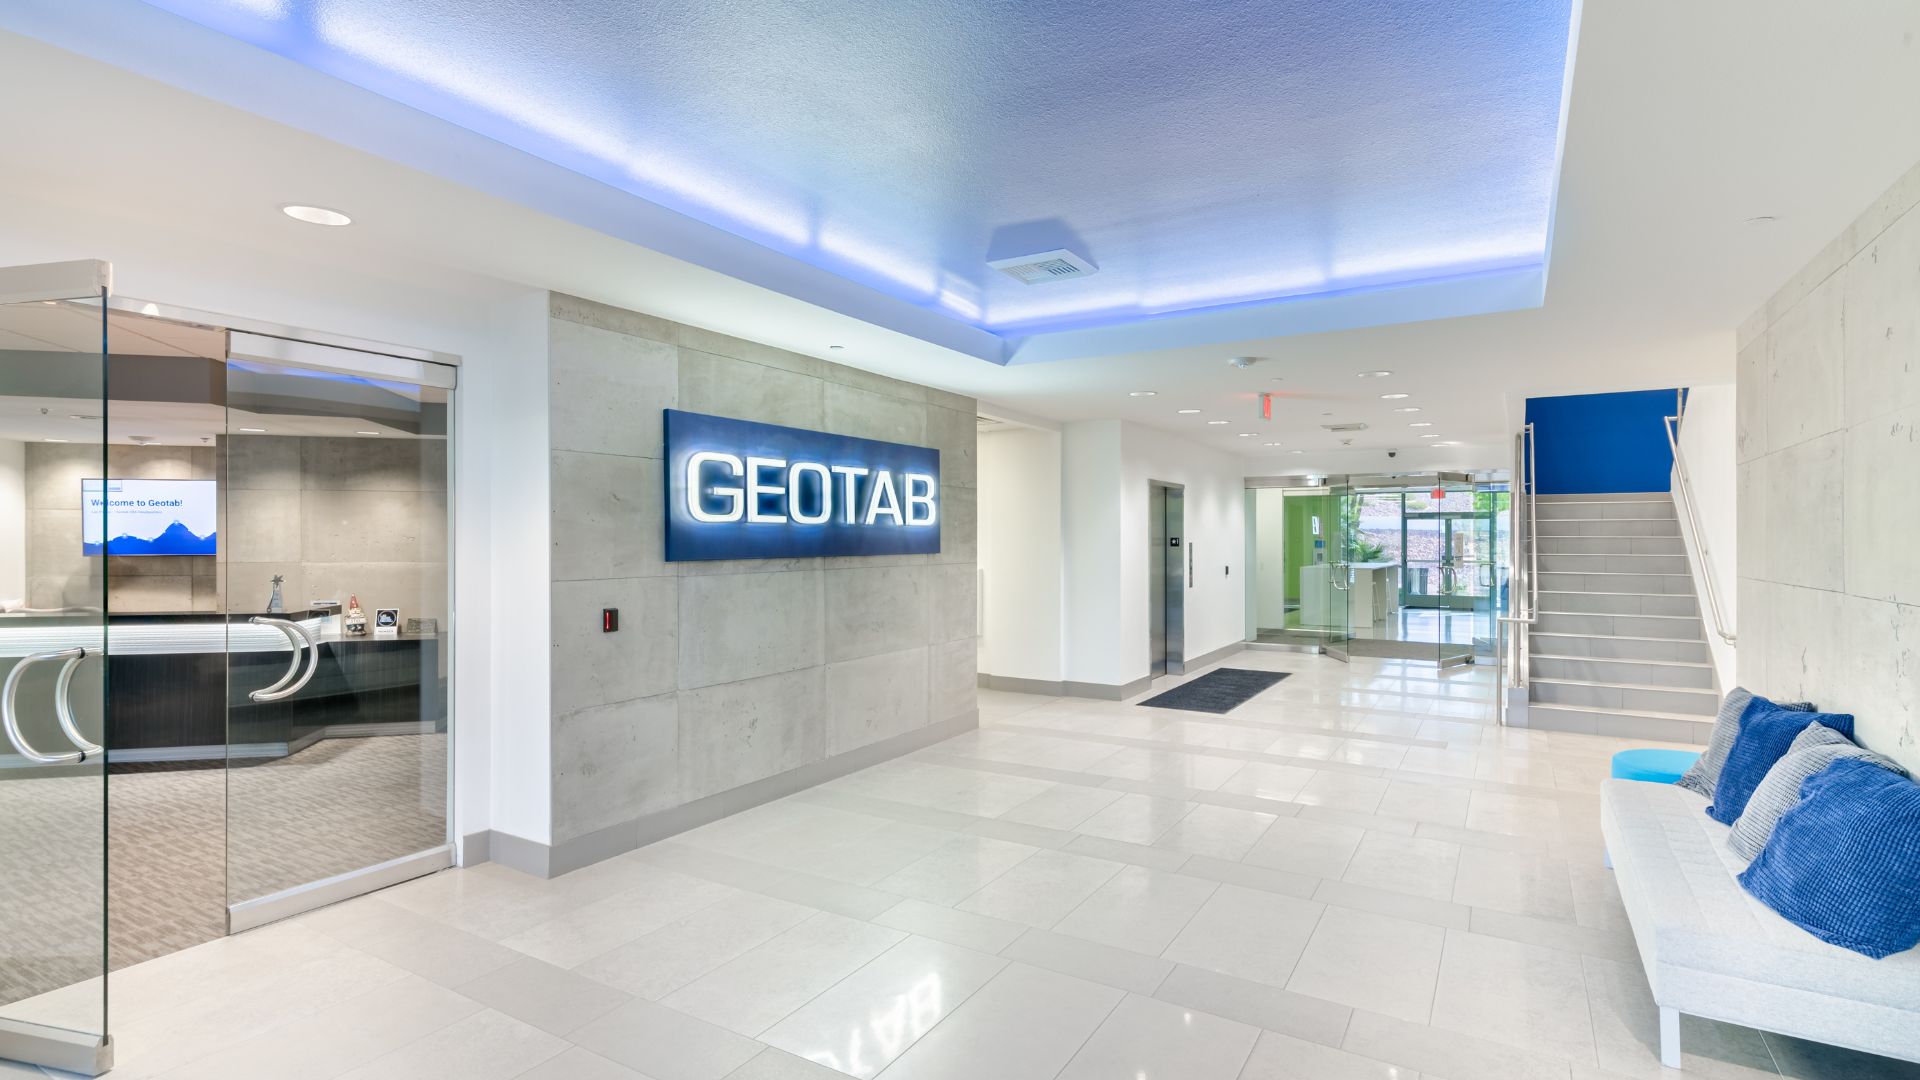 The lobby of Geotab's U.S. headquarters in Las Vegas, Nevada.